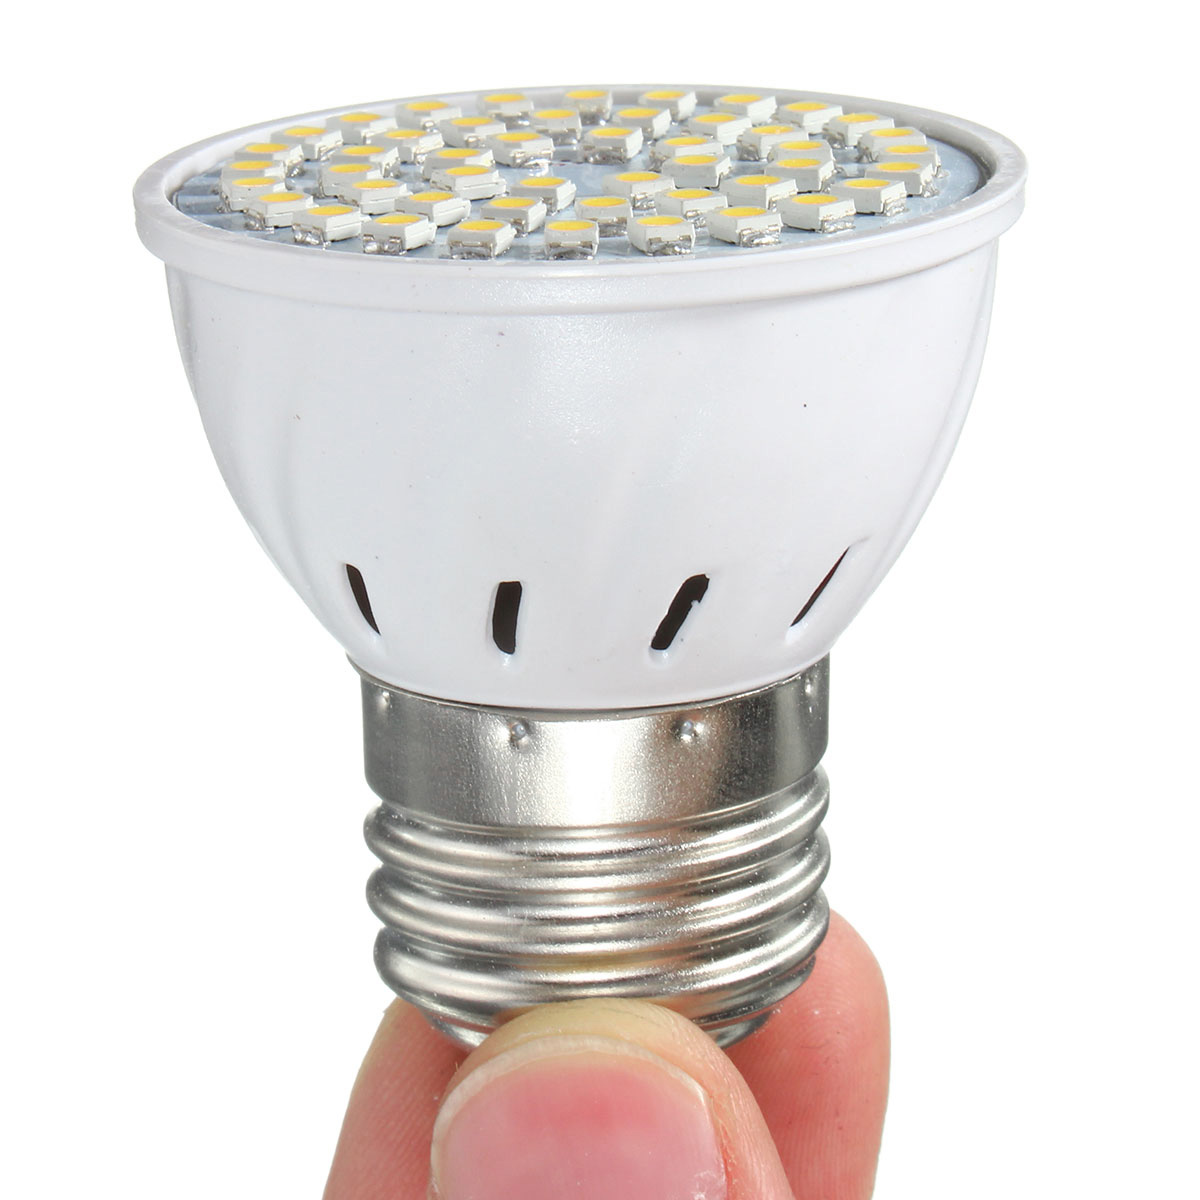 ZX-E27-E14-GU10-MR16-LED-4W-48-SMD-3528-LED-Pure-White-Warm-White-Spot-Lightt-Lamp-Bulb-AC110V-AC220-1076565-9